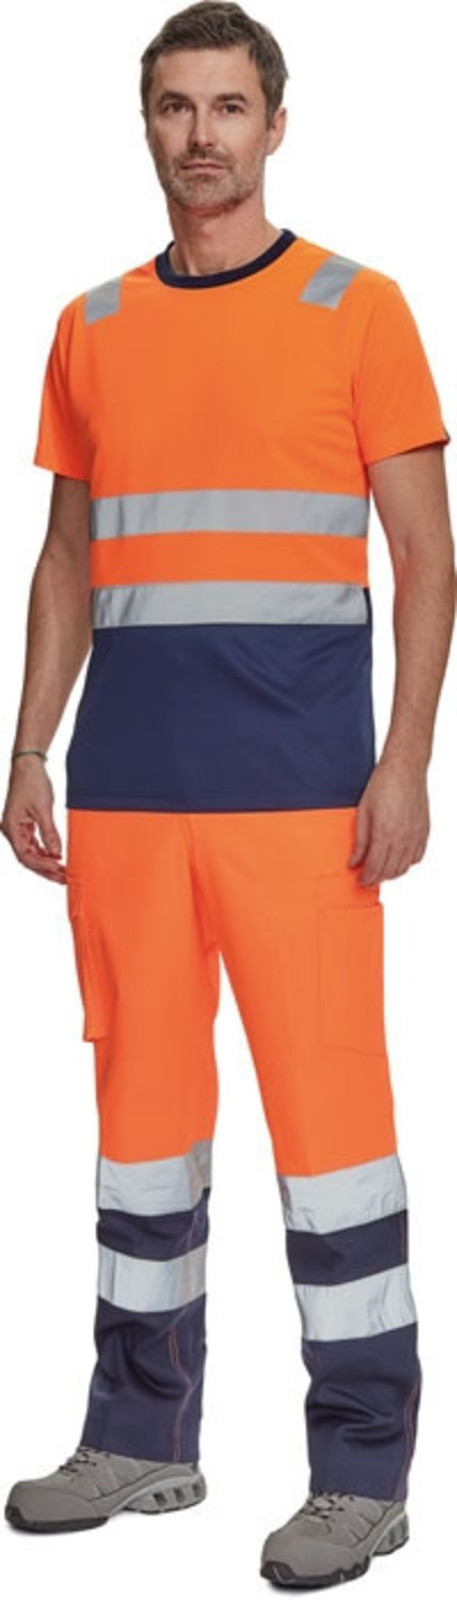 Reflexné tričko Cerva Monzon HV - veľkosť: XS, farba: oranžová/navy